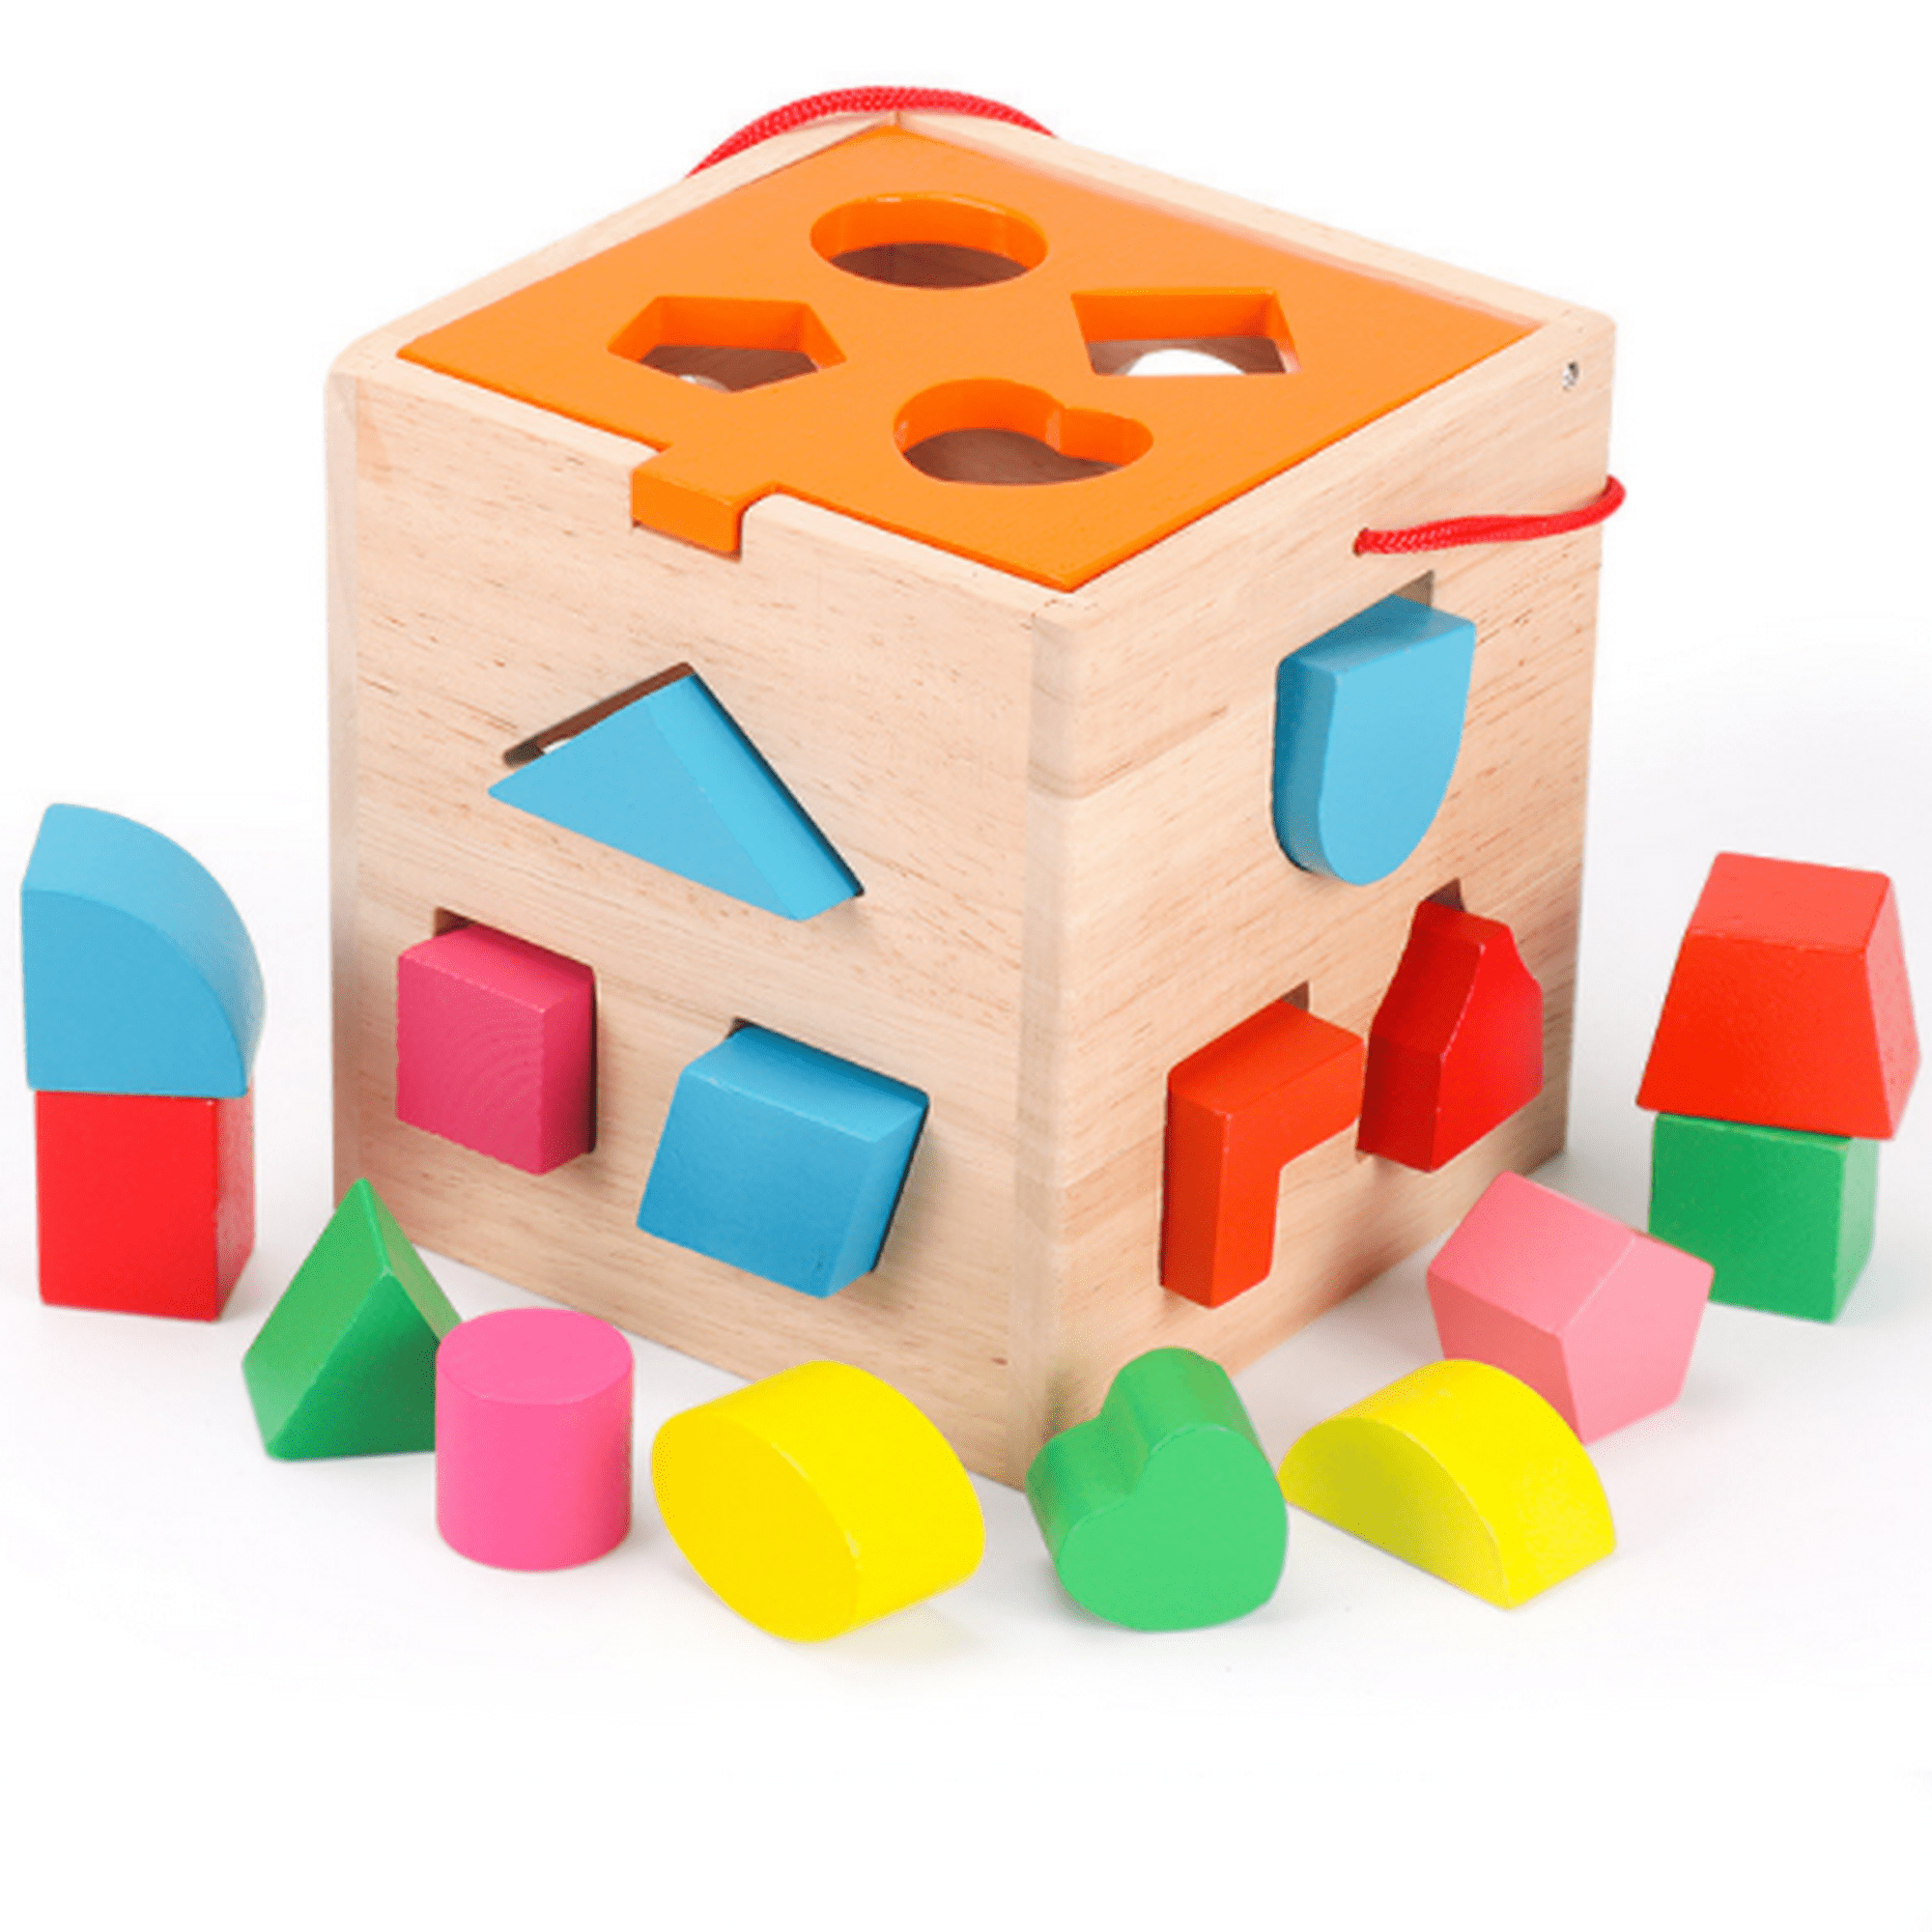 Cubos de madera, 50 bloques cuadrados de madera cúbica sin terminar para  contar matemáticas, manualidades, juego infantil, 0.8 x 0.8 x 0.8 pulgadas  : Juguetes y Juegos 